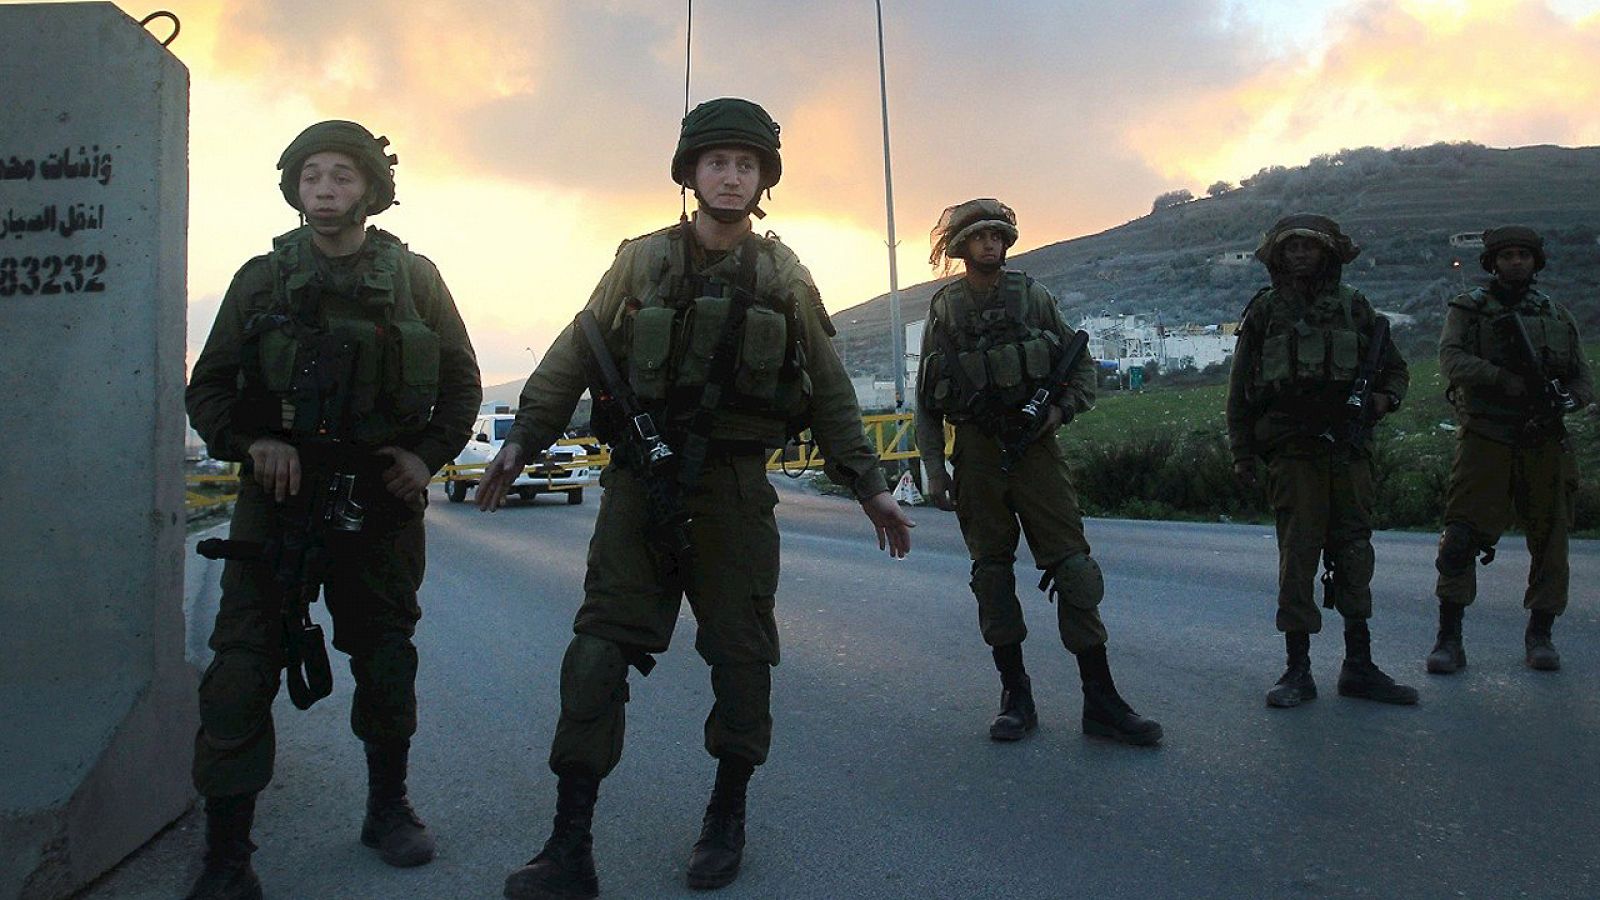 Fuerzas de seguridad israelíes montan guardia en el puesto de control de Huwara, cerca de Nablús (Cisjordania), el 26 de diciembre de 2015. AFP PHOTO / JAAFAR ASHTIYEH